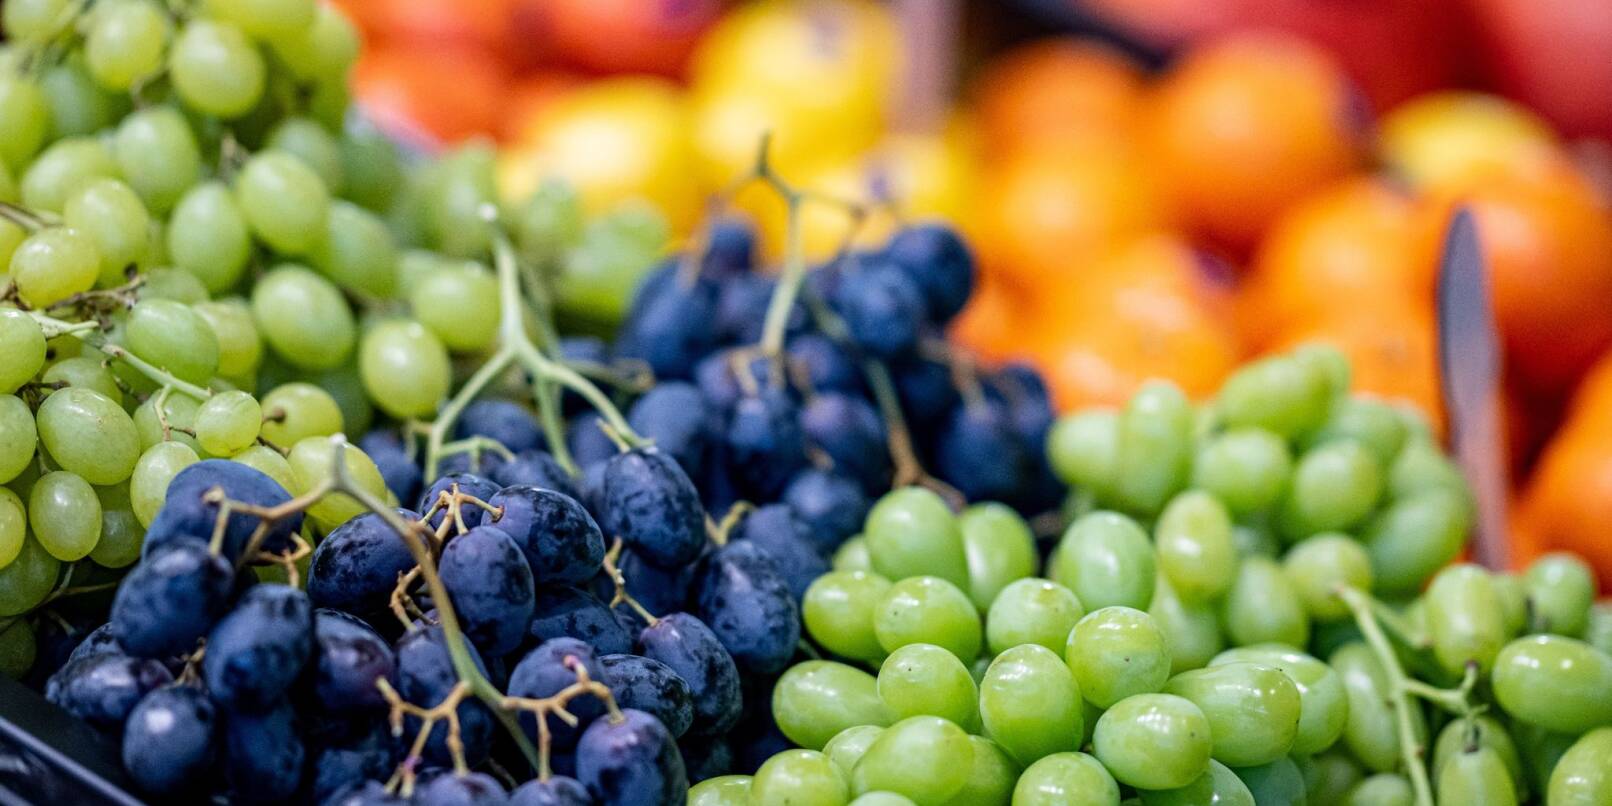 Laut einem Statistik-Handbuch zur Fruit Logistica wurden im vergangenen Jahr in Deutschland 5,2 Millionen Tonnen Obst und Gemüse geerntet.